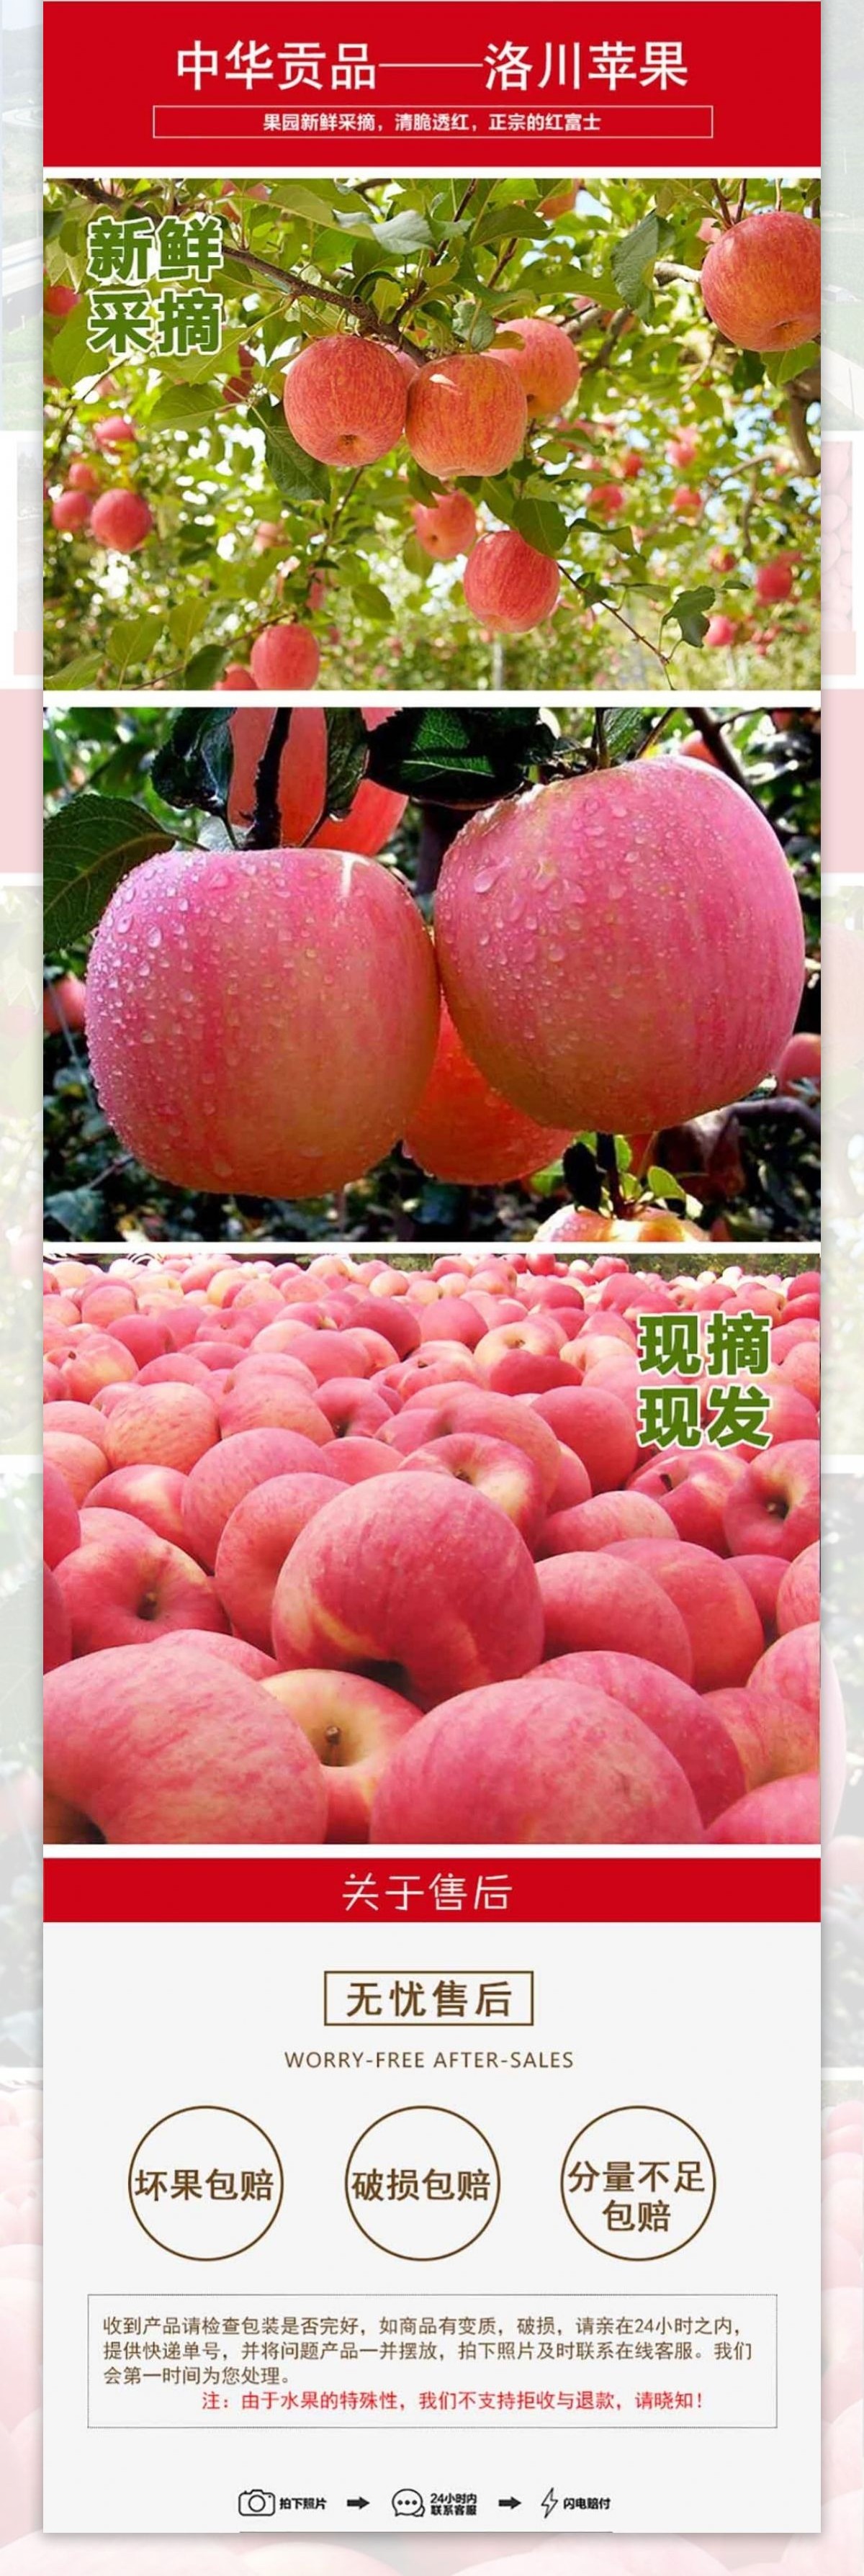 洛川苹果1详情页水果